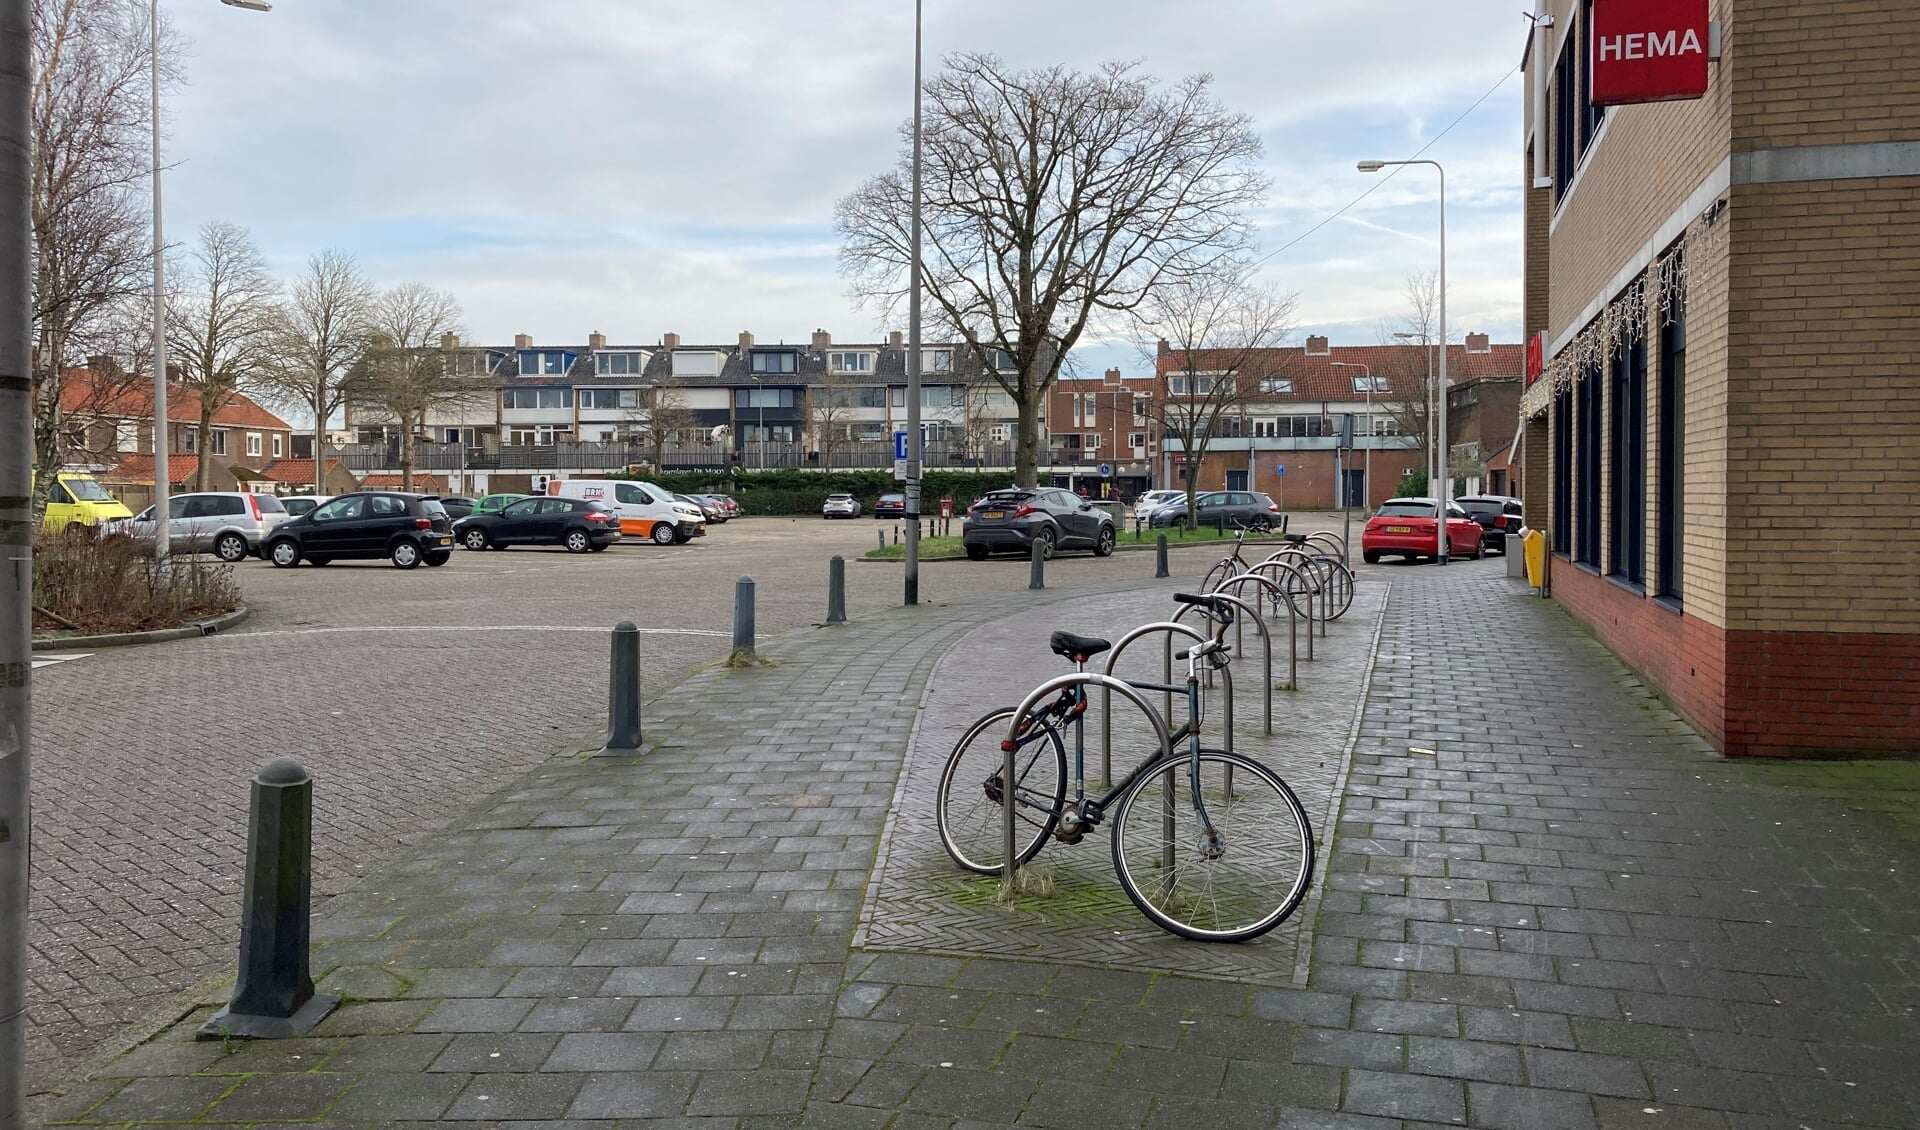 Eigenaren appartementen Hofzicht willen parkeerruimte niet afstaan. | Foto: CvdS. 